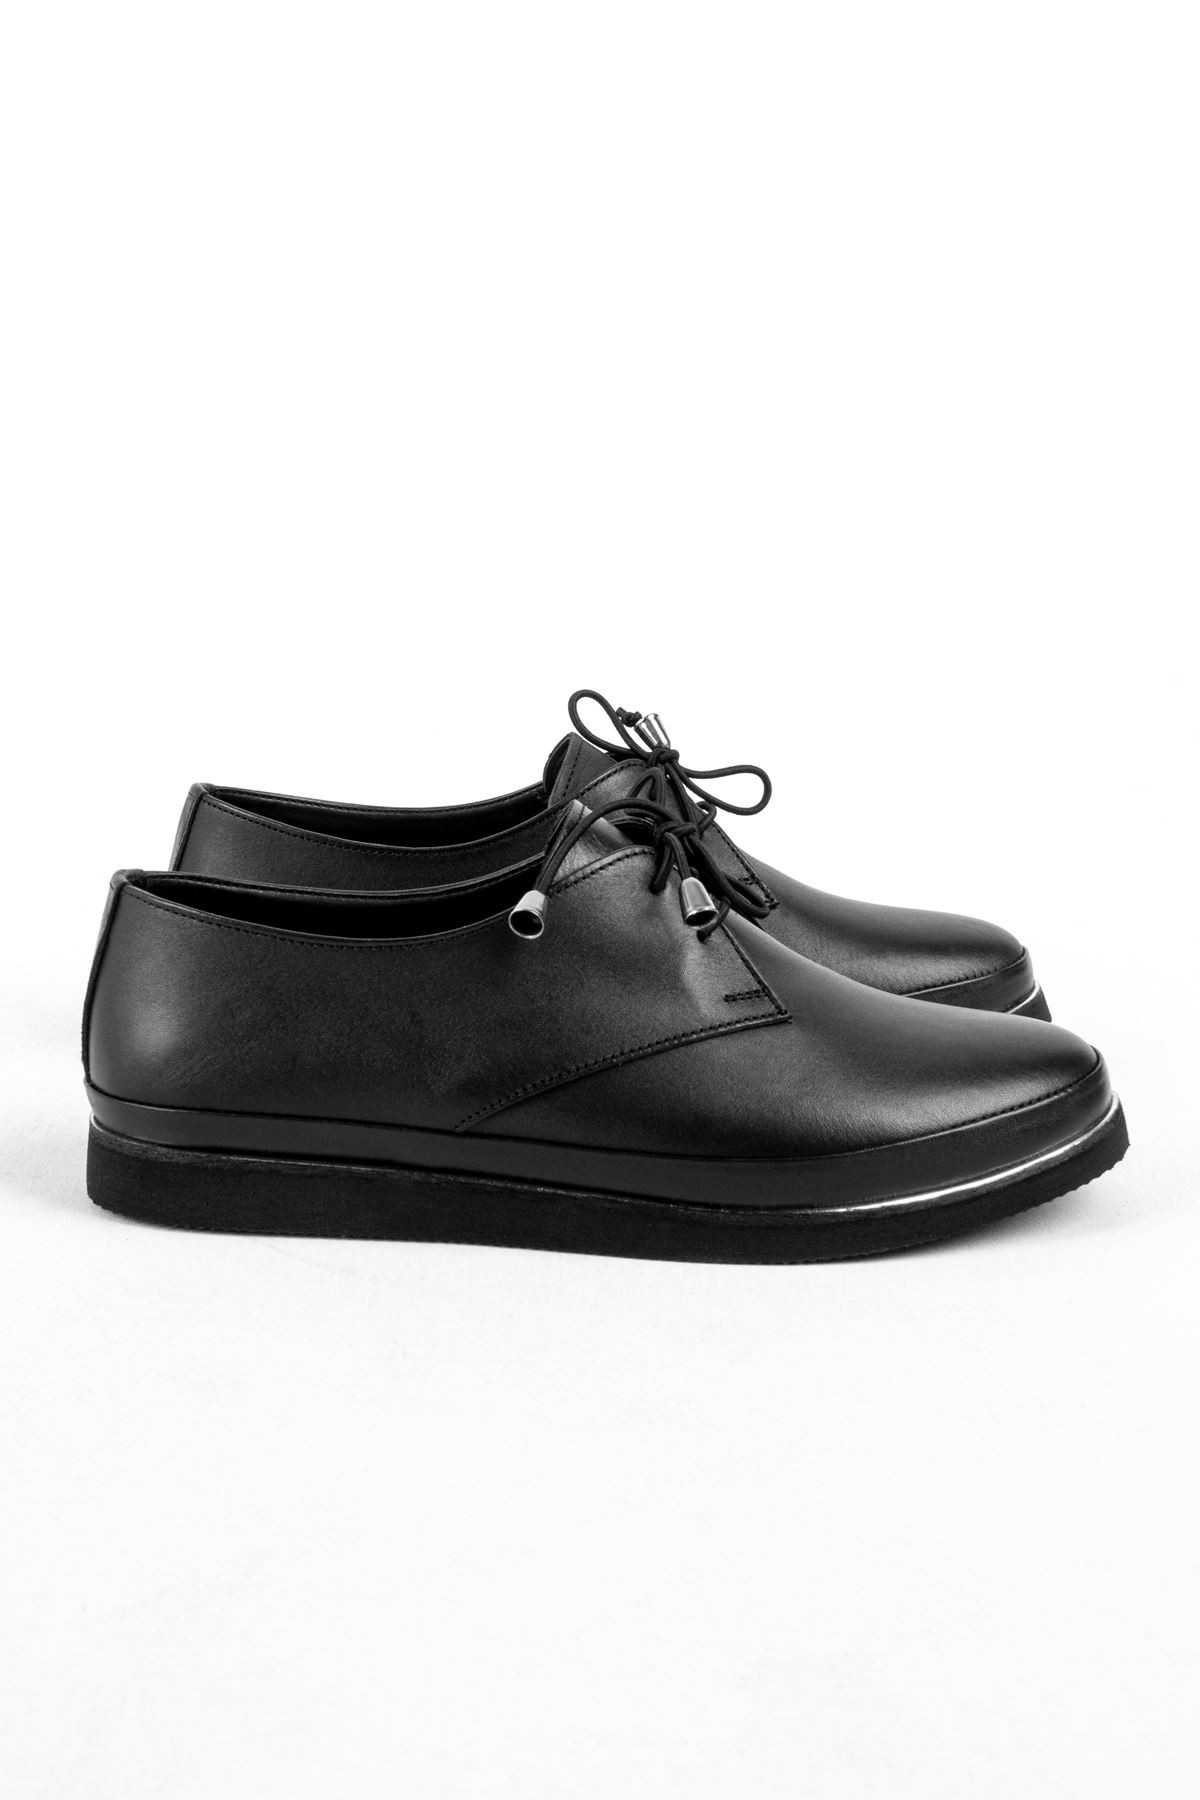 Neel Kadın Günlük Hakiki Deri Ayakkabı (B1806) - Siyah